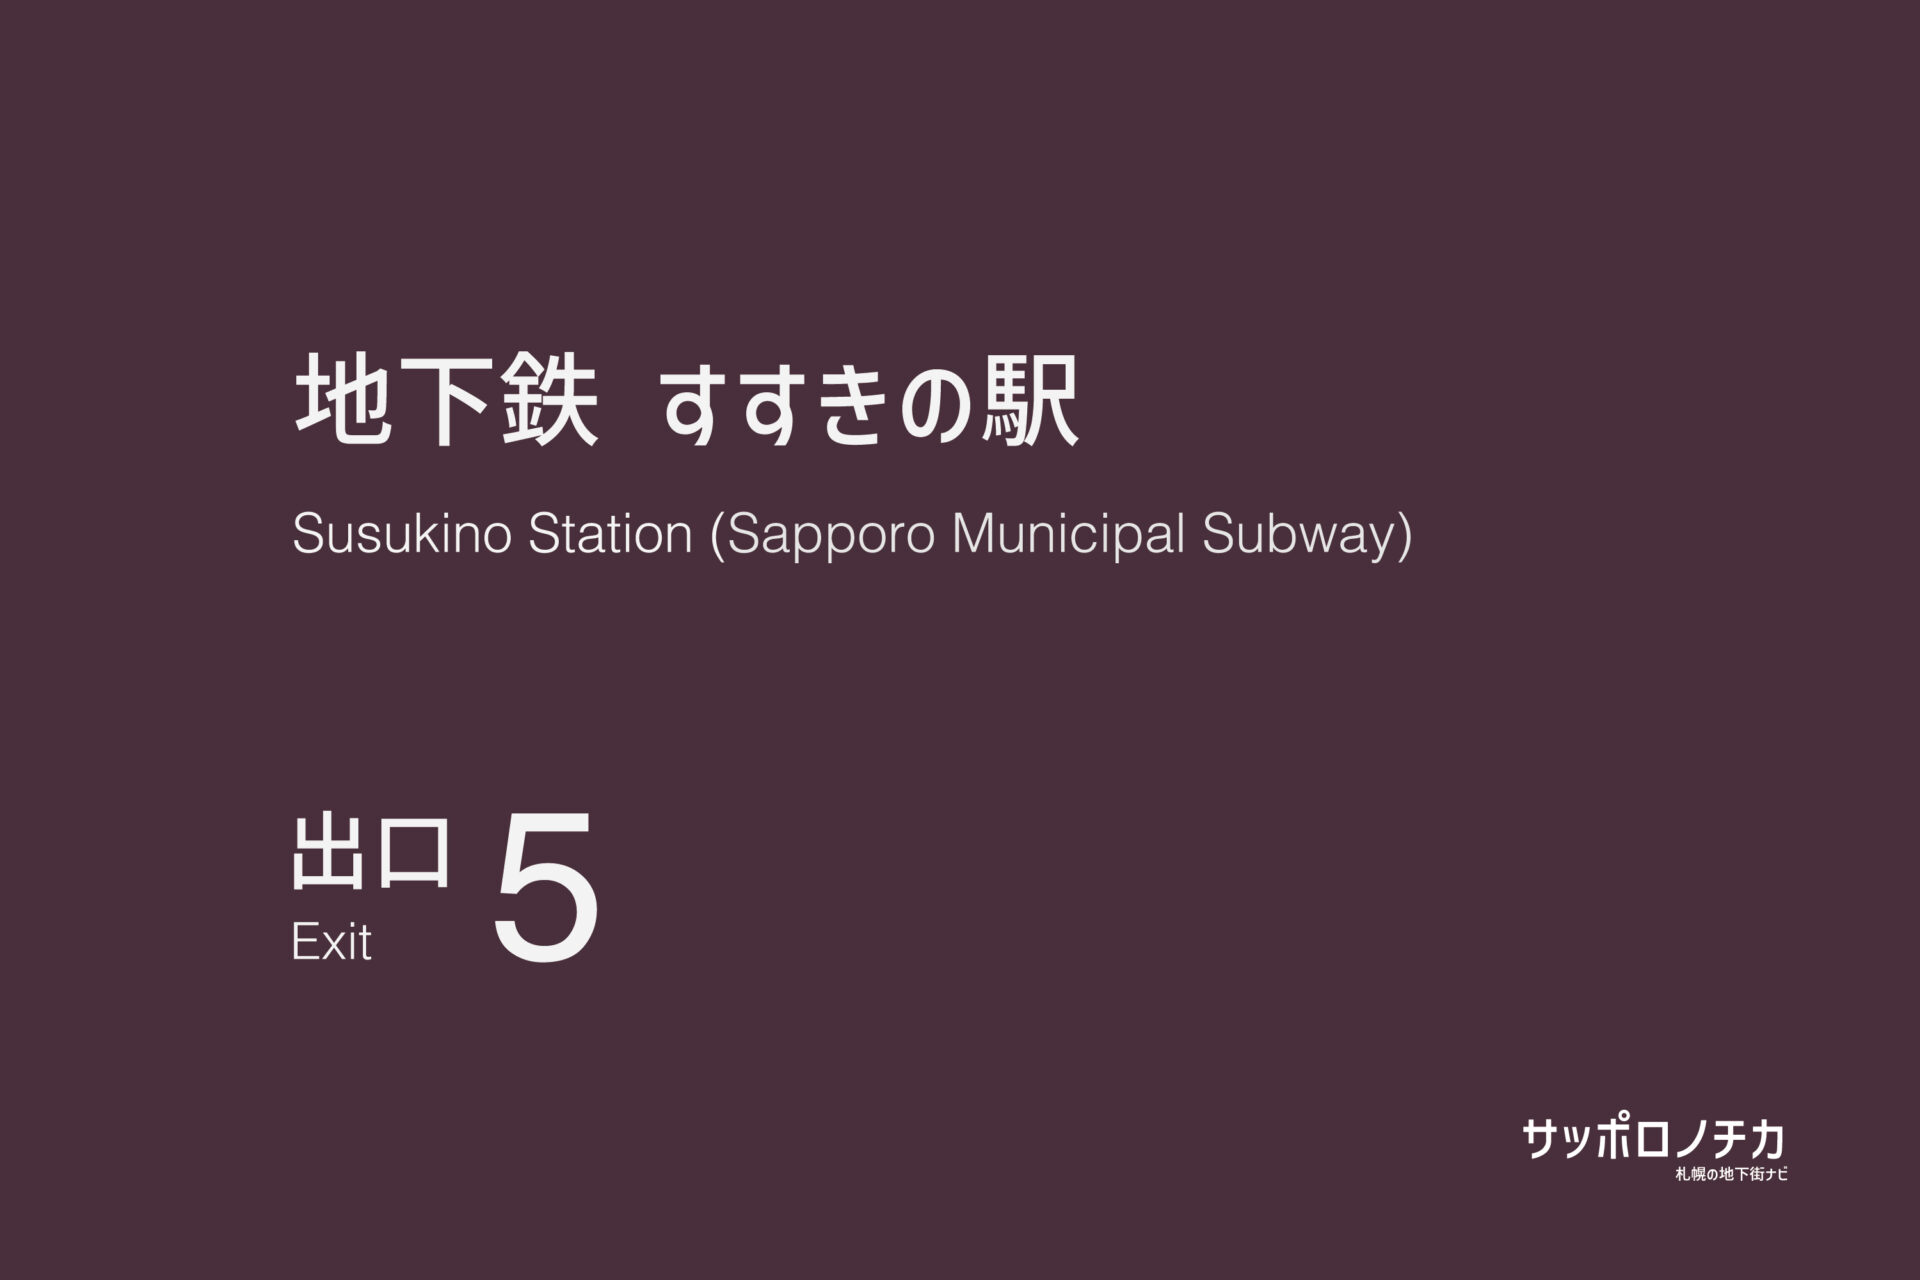 札幌市営地下鉄「すすきの駅」5番出口